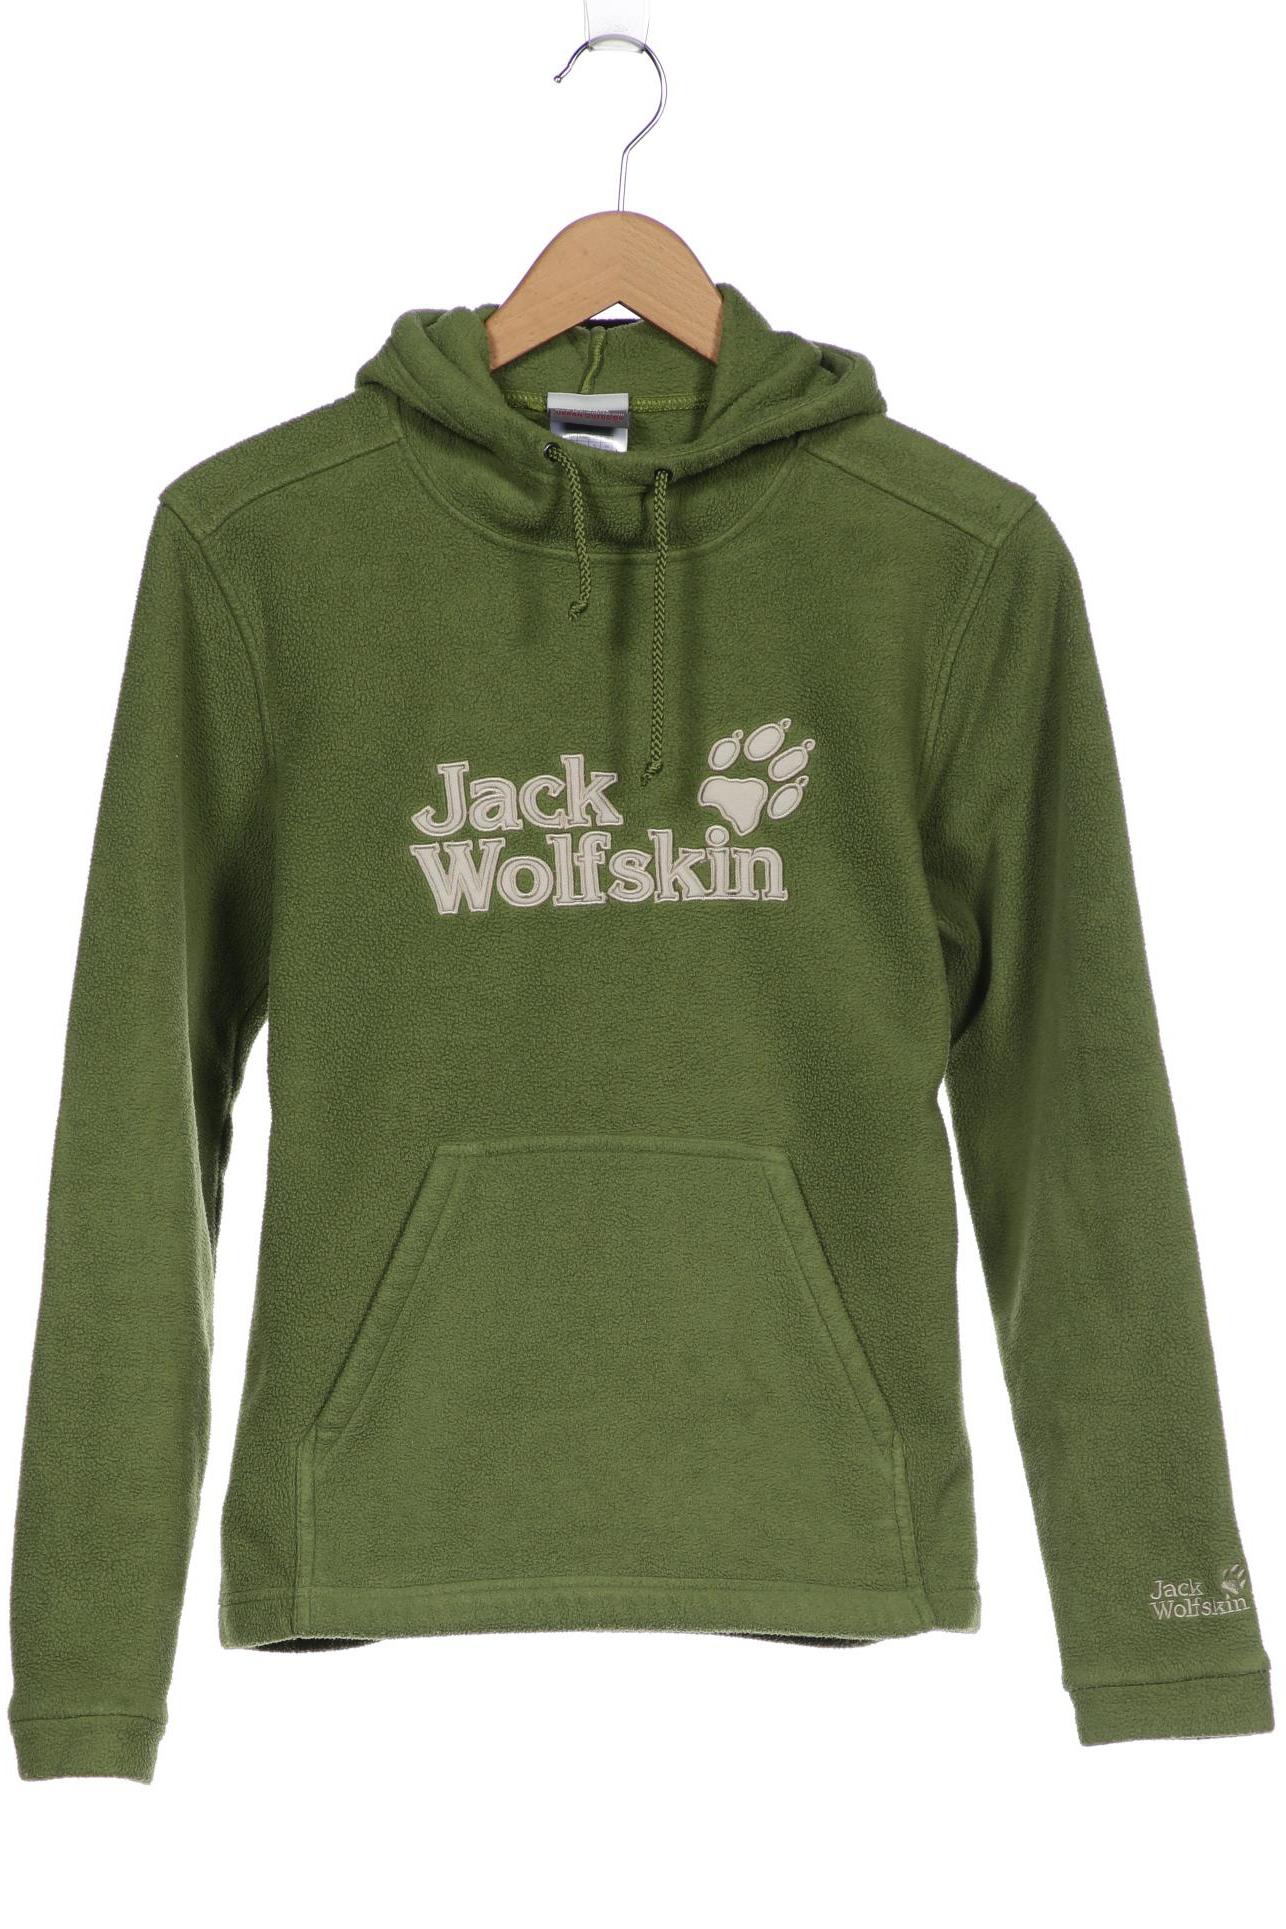 Jack Wolfskin Damen Kapuzenpullover, grün von Jack Wolfskin